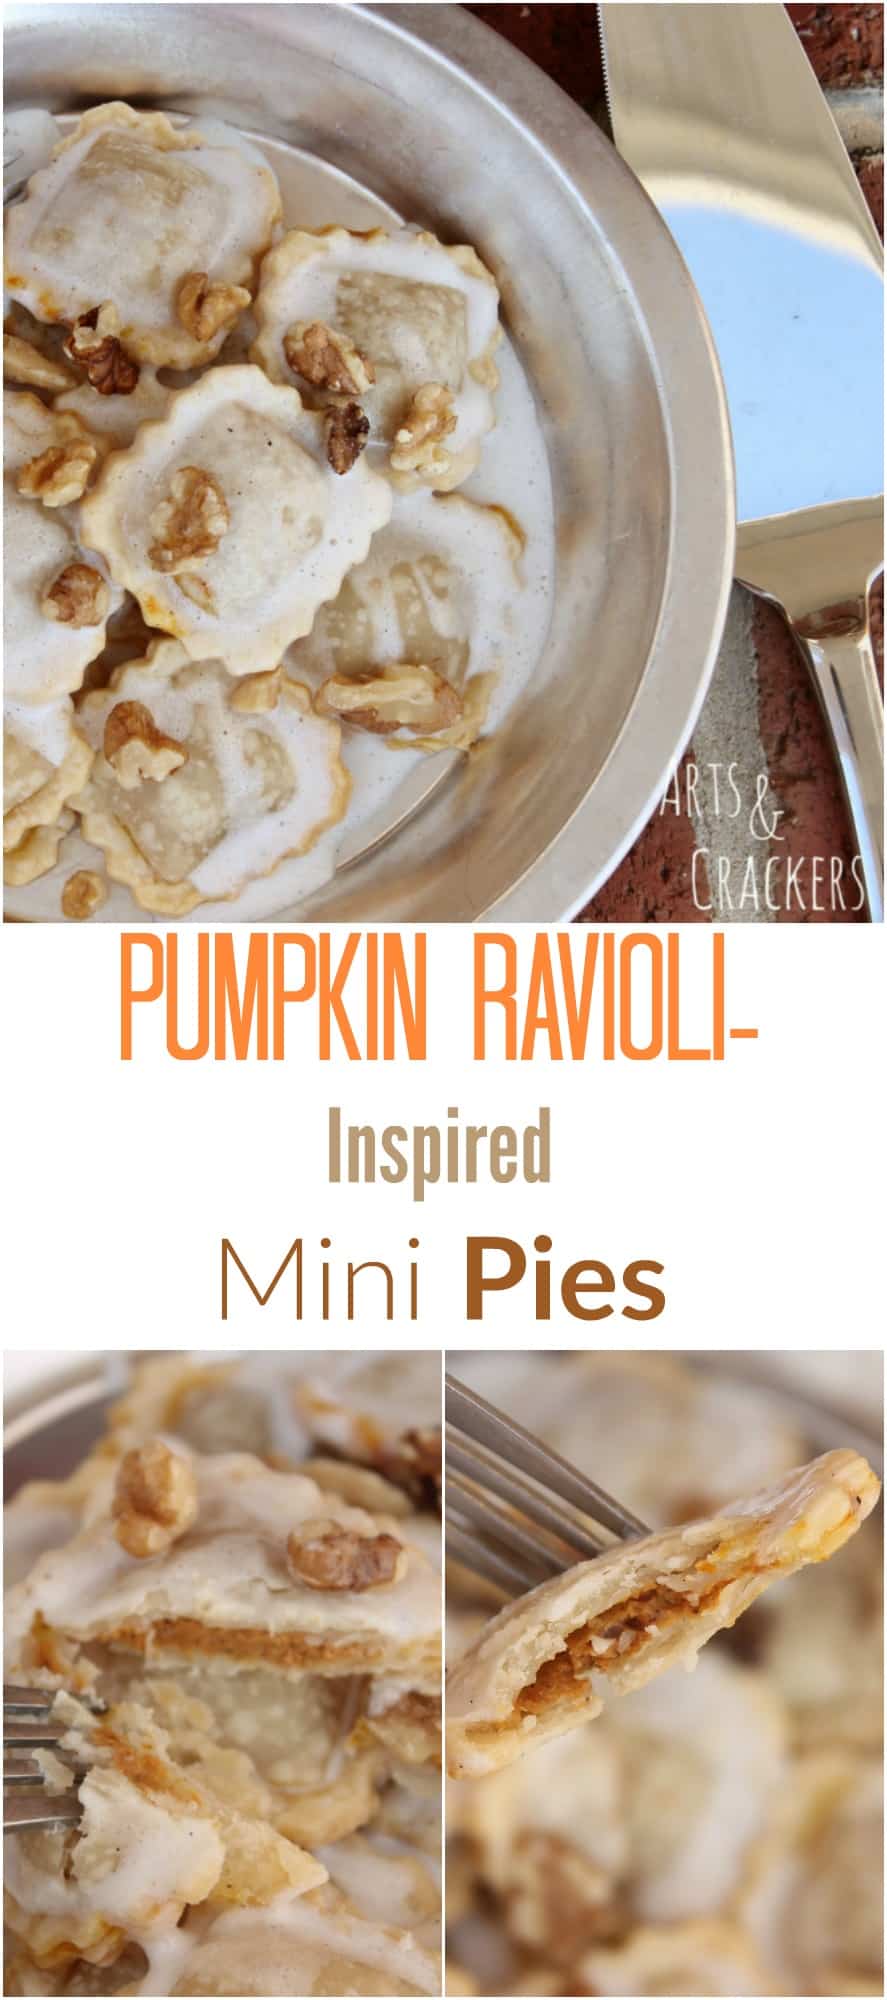 Pumpkin ravioli inspired mini pies